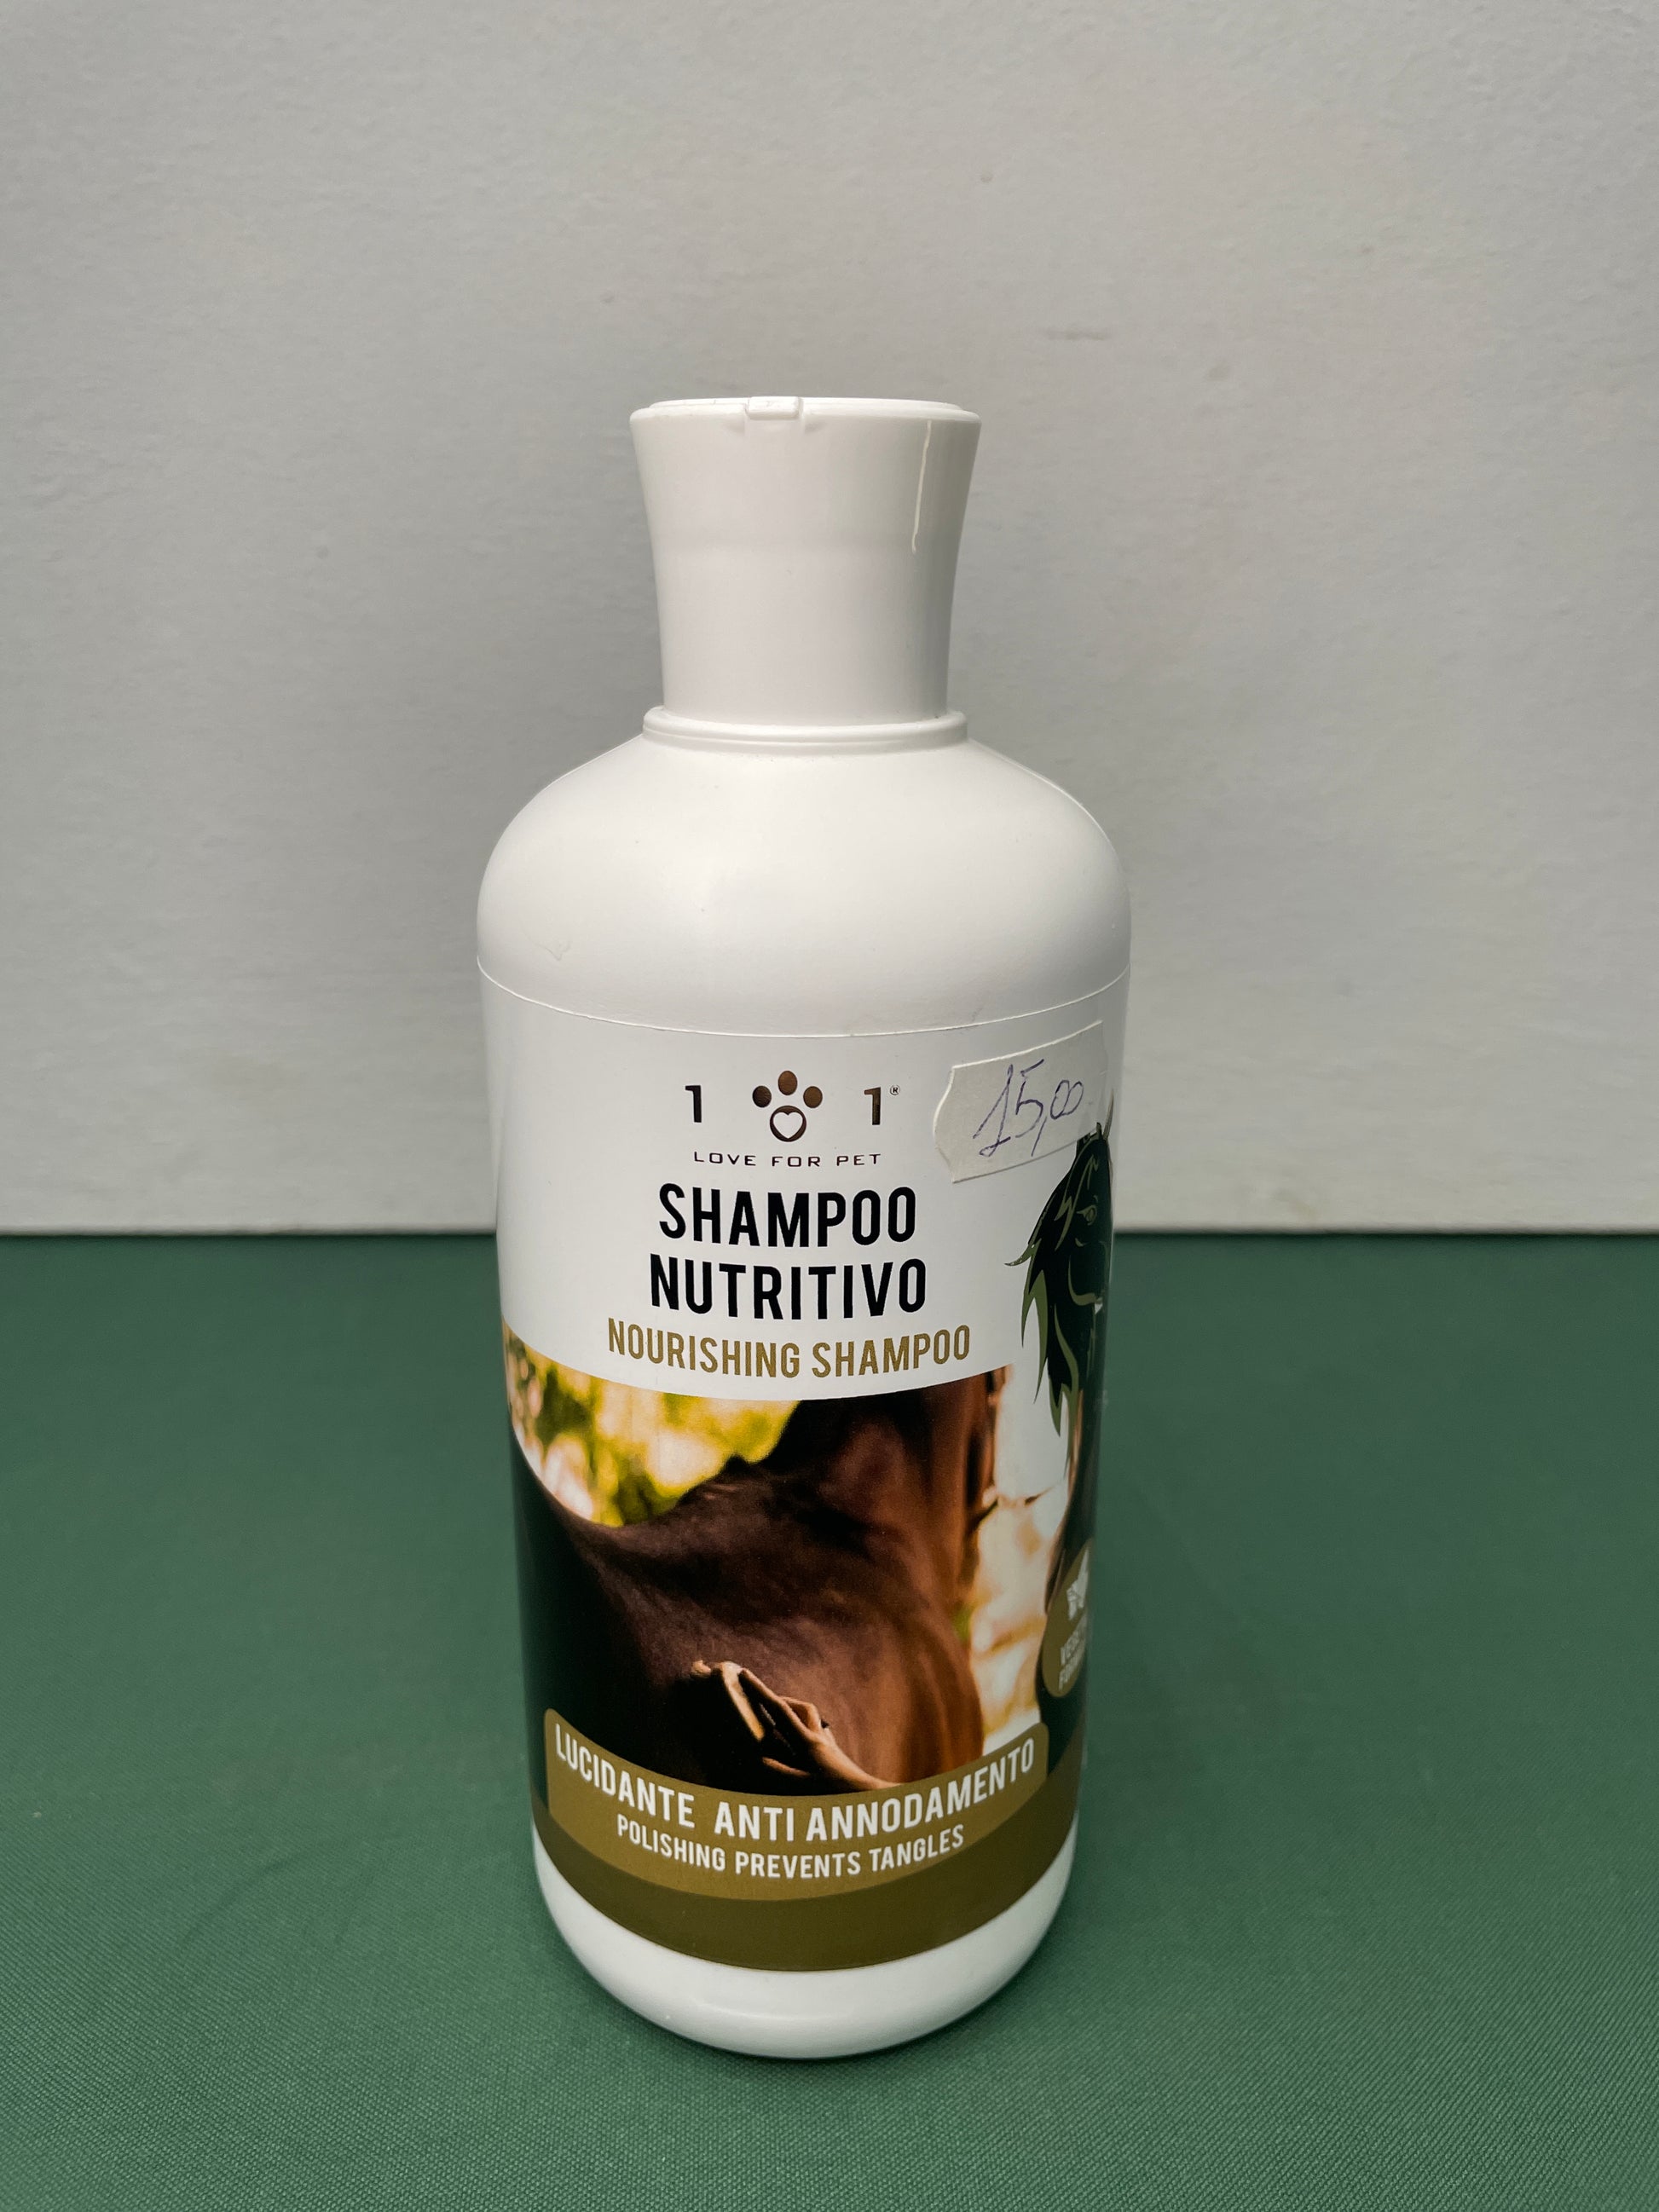 Linea 101 - Shampoo NUTRITIVO per la Criniera dei Cavalli con Camomill –  Non Solo Piume